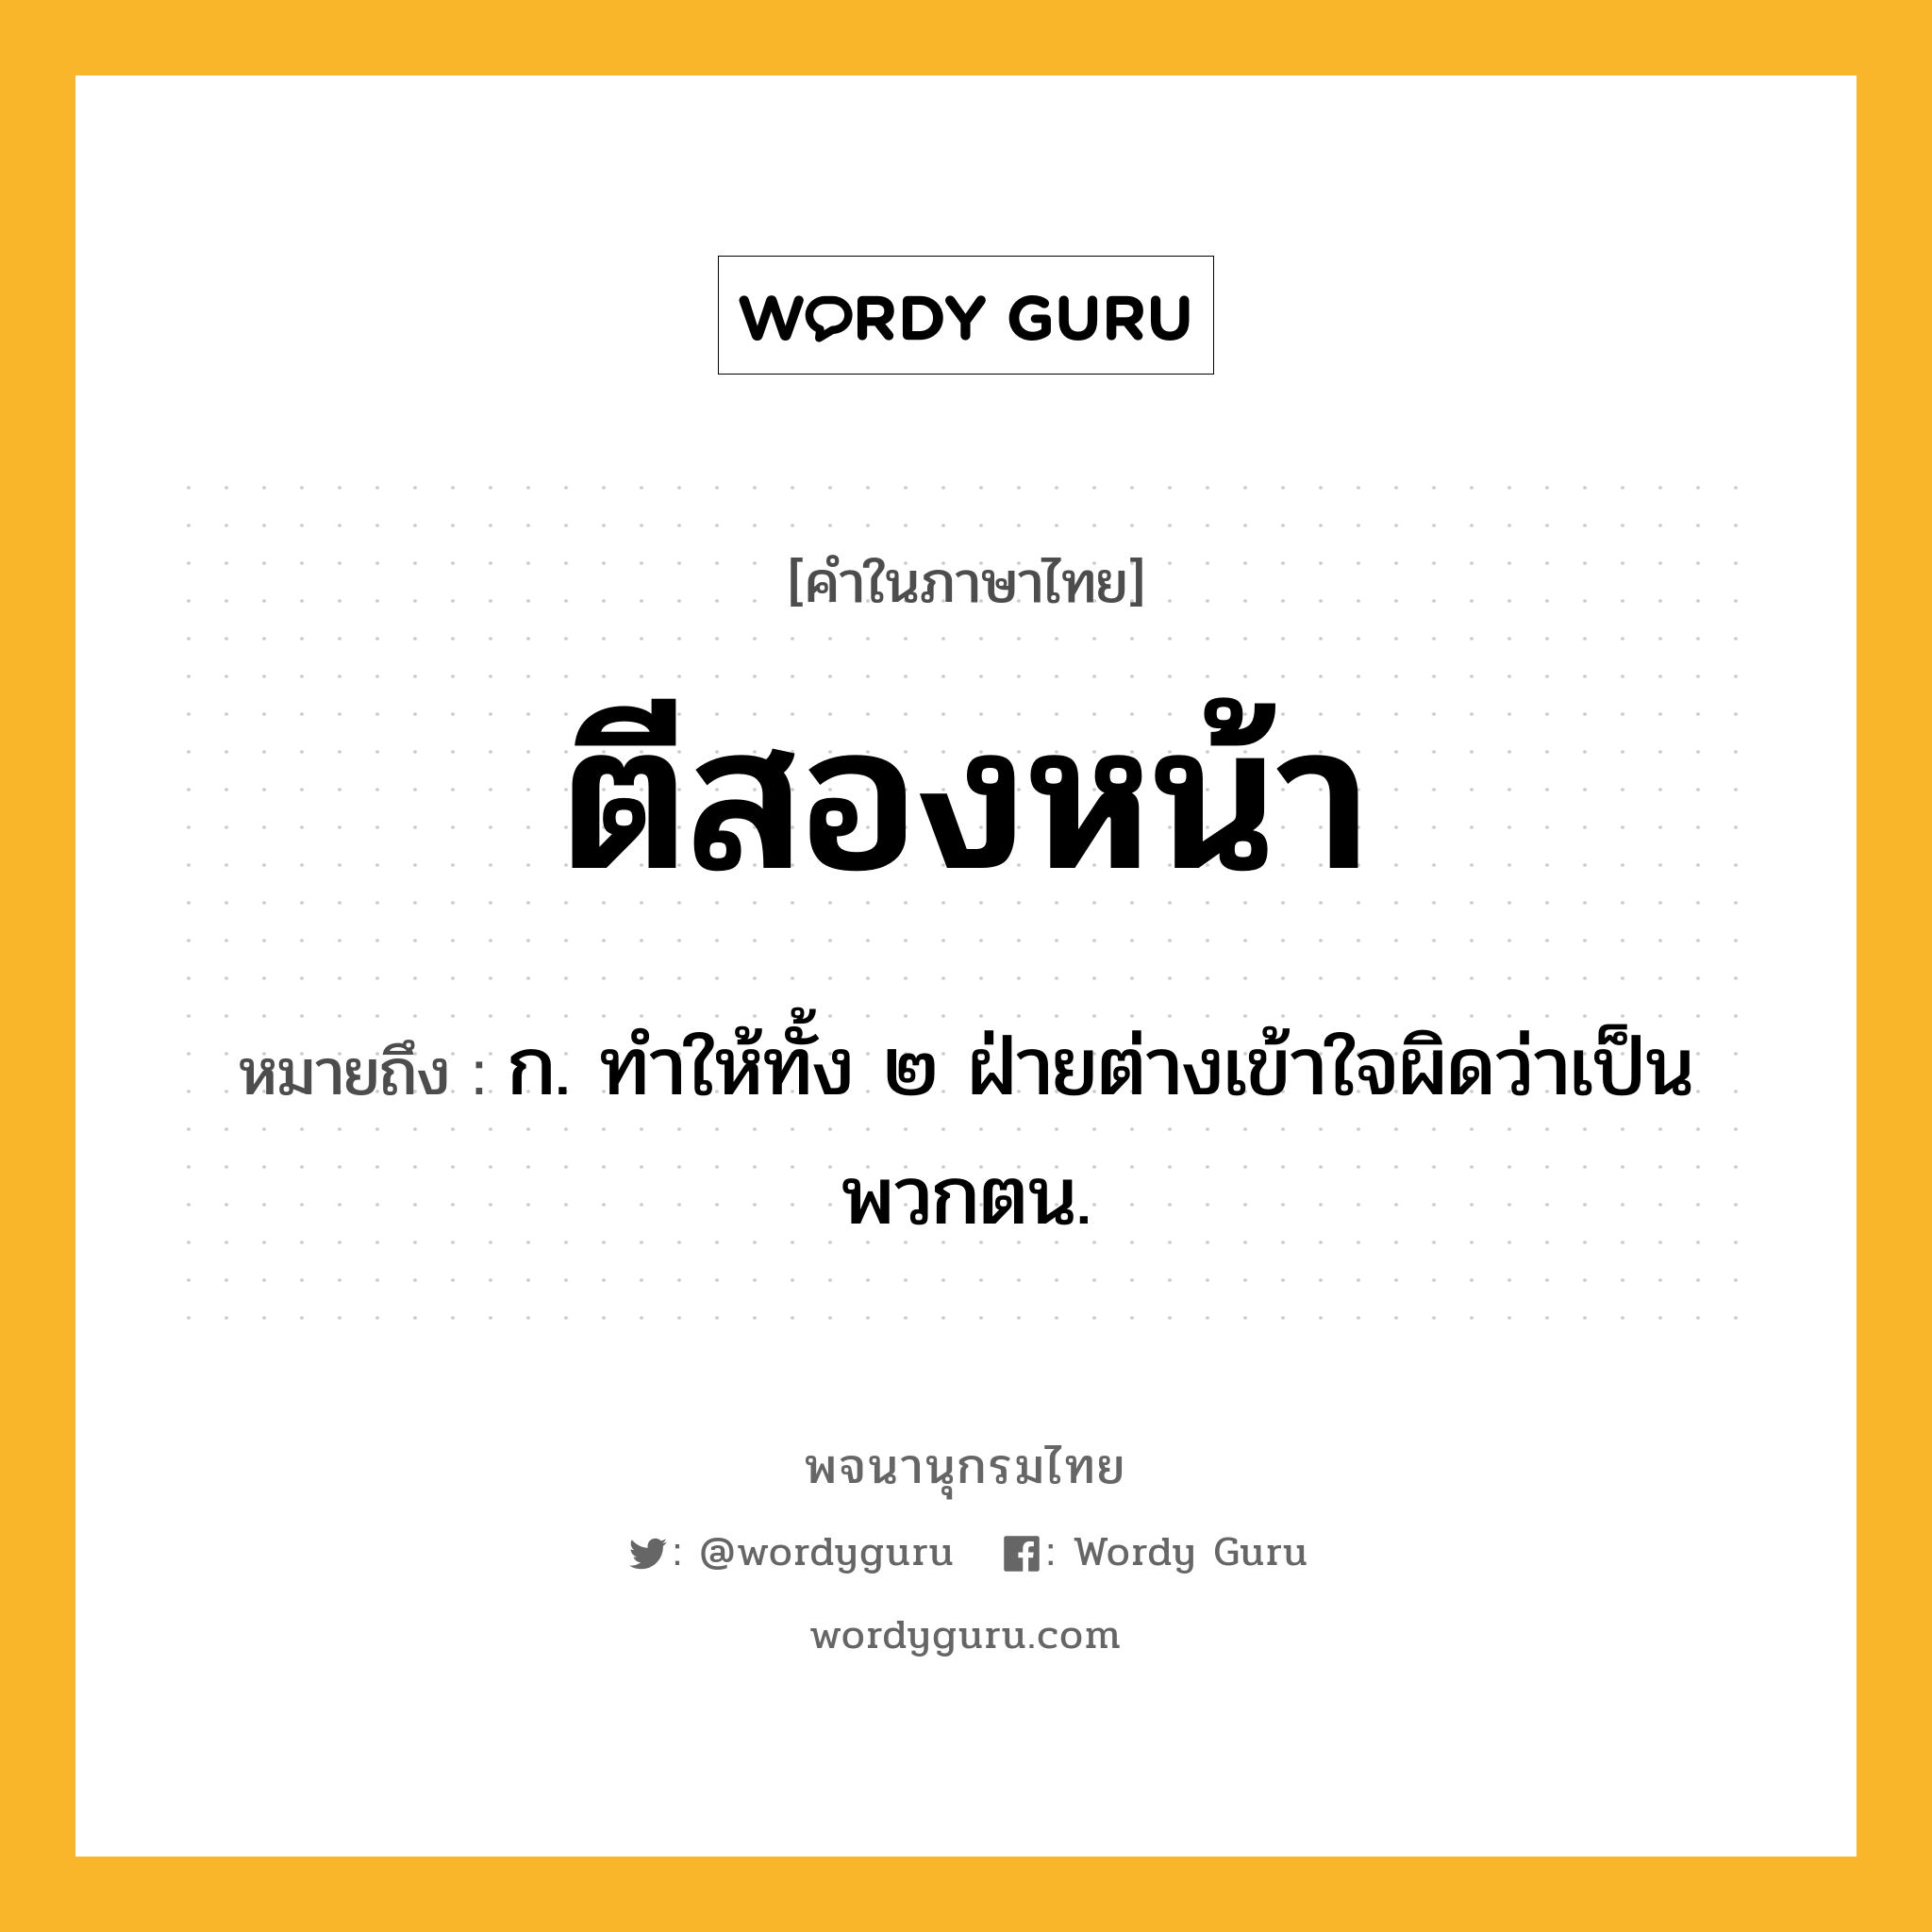 ตีสองหน้า หมายถึงอะไร?, คำในภาษาไทย ตีสองหน้า หมายถึง ก. ทําให้ทั้ง ๒ ฝ่ายต่างเข้าใจผิดว่าเป็นพวกตน.